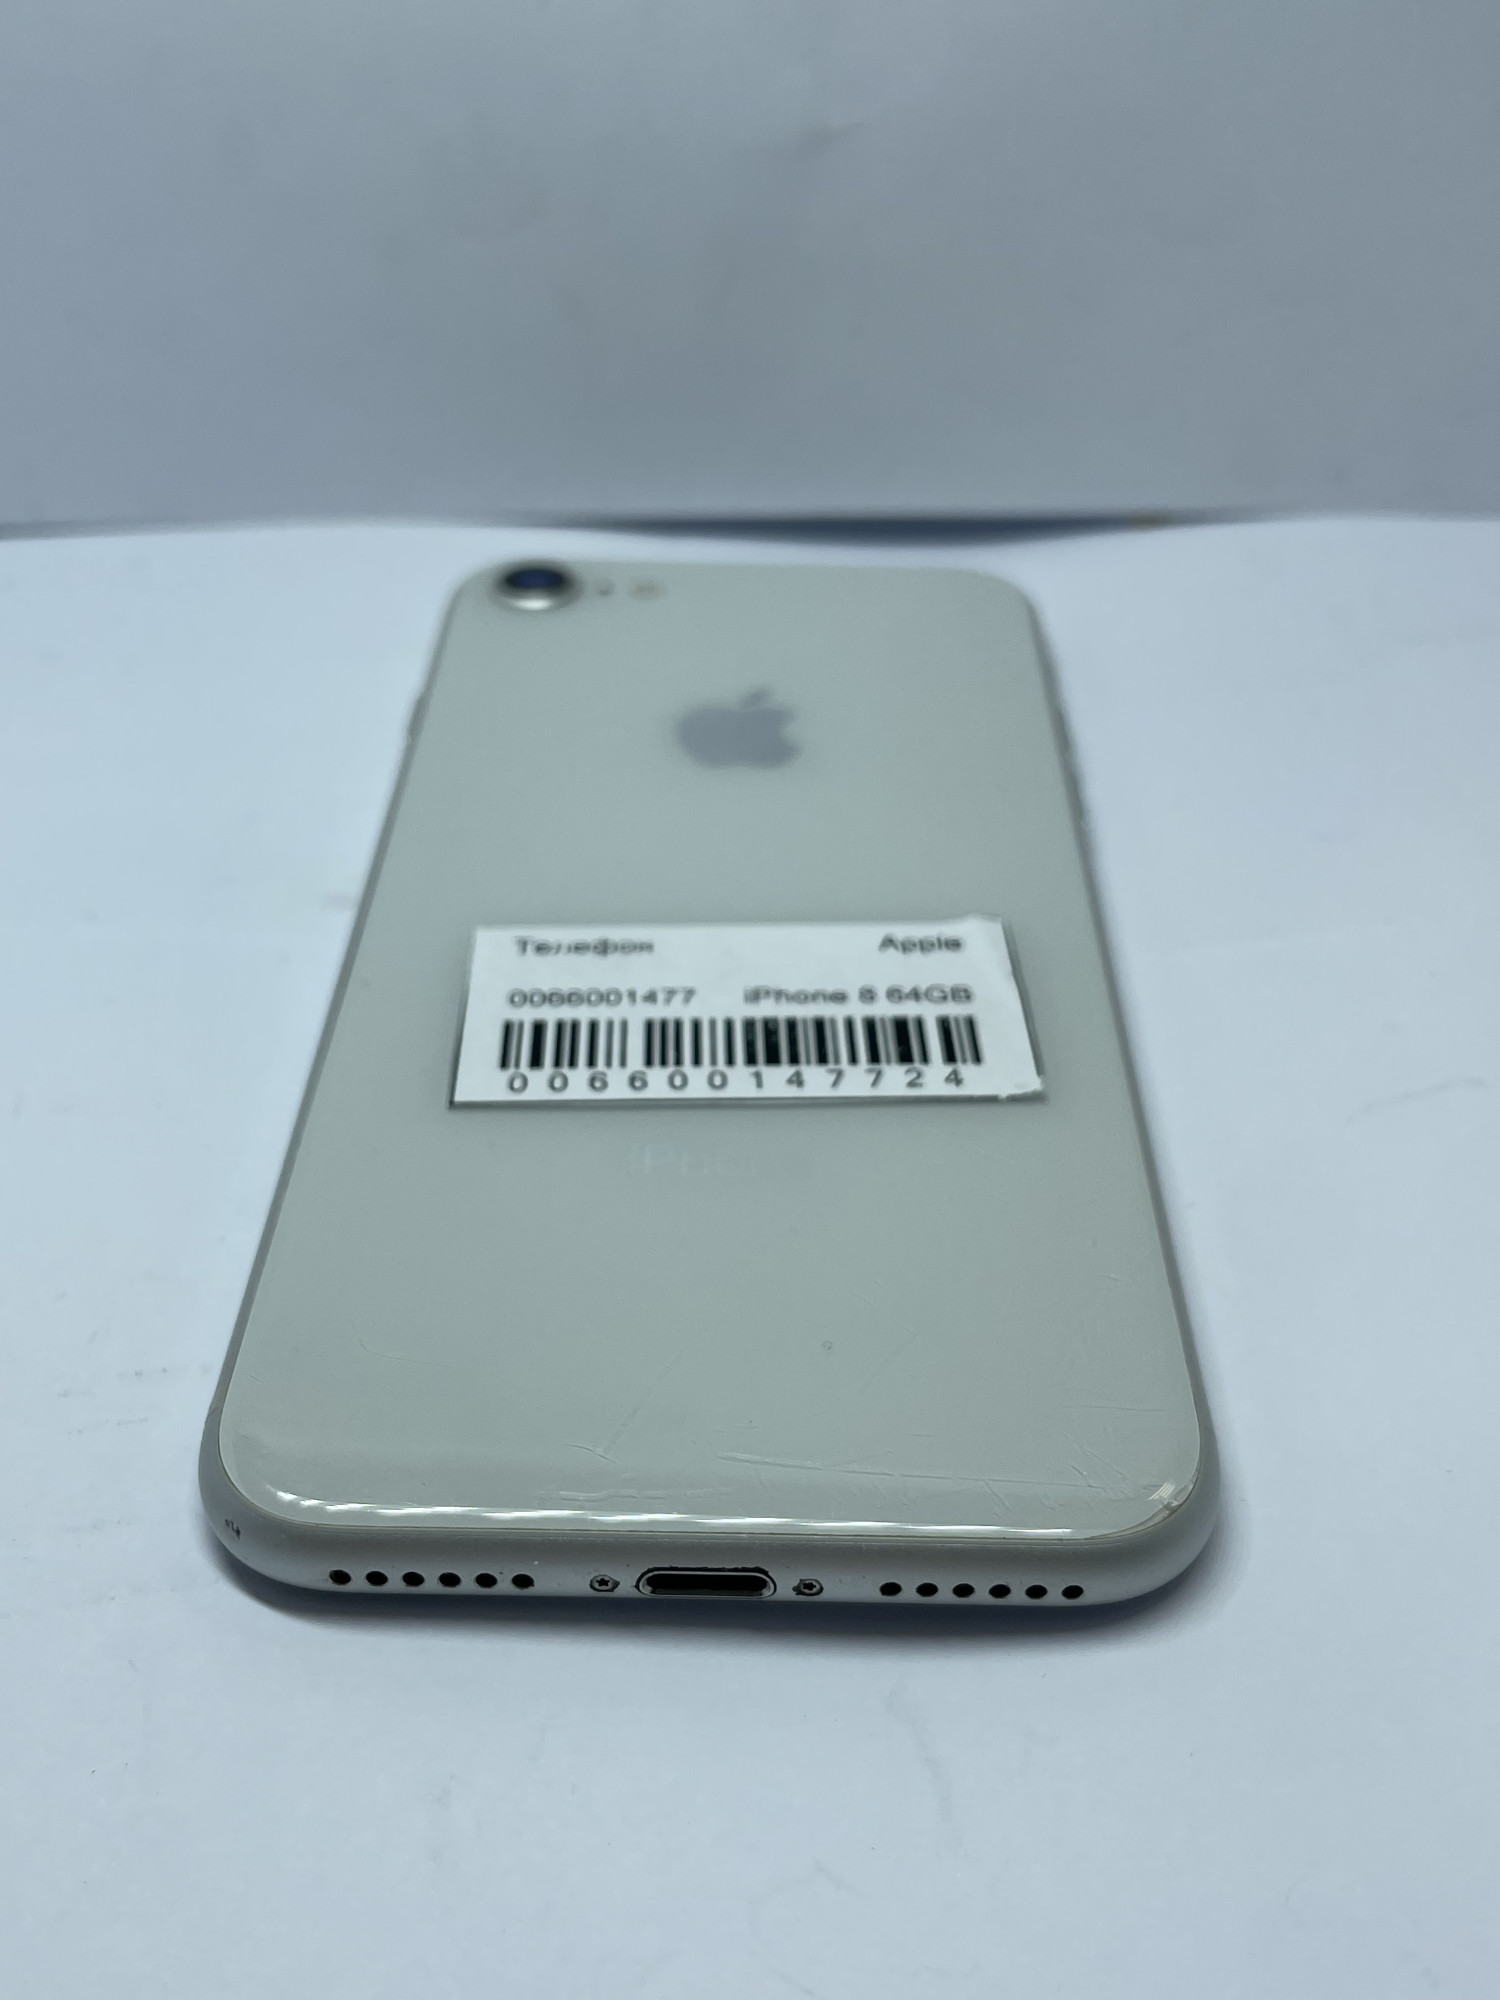 Apple iPhone 8 64Gb Silver (MQ6L2) 4